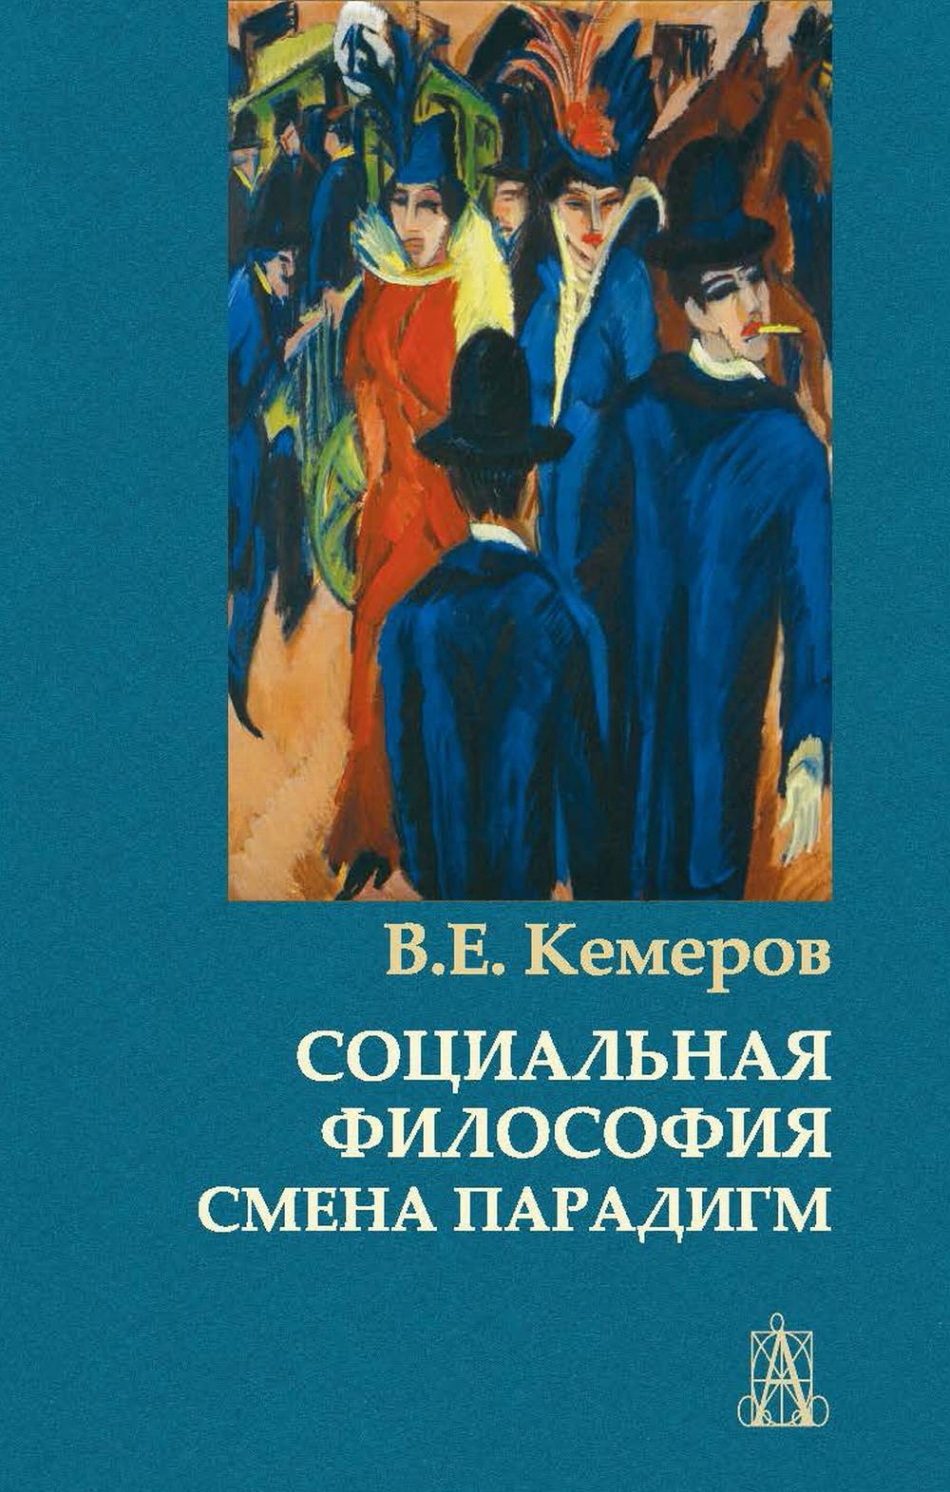 Кемеров В.Е. Социальная философия: смена парадигм 